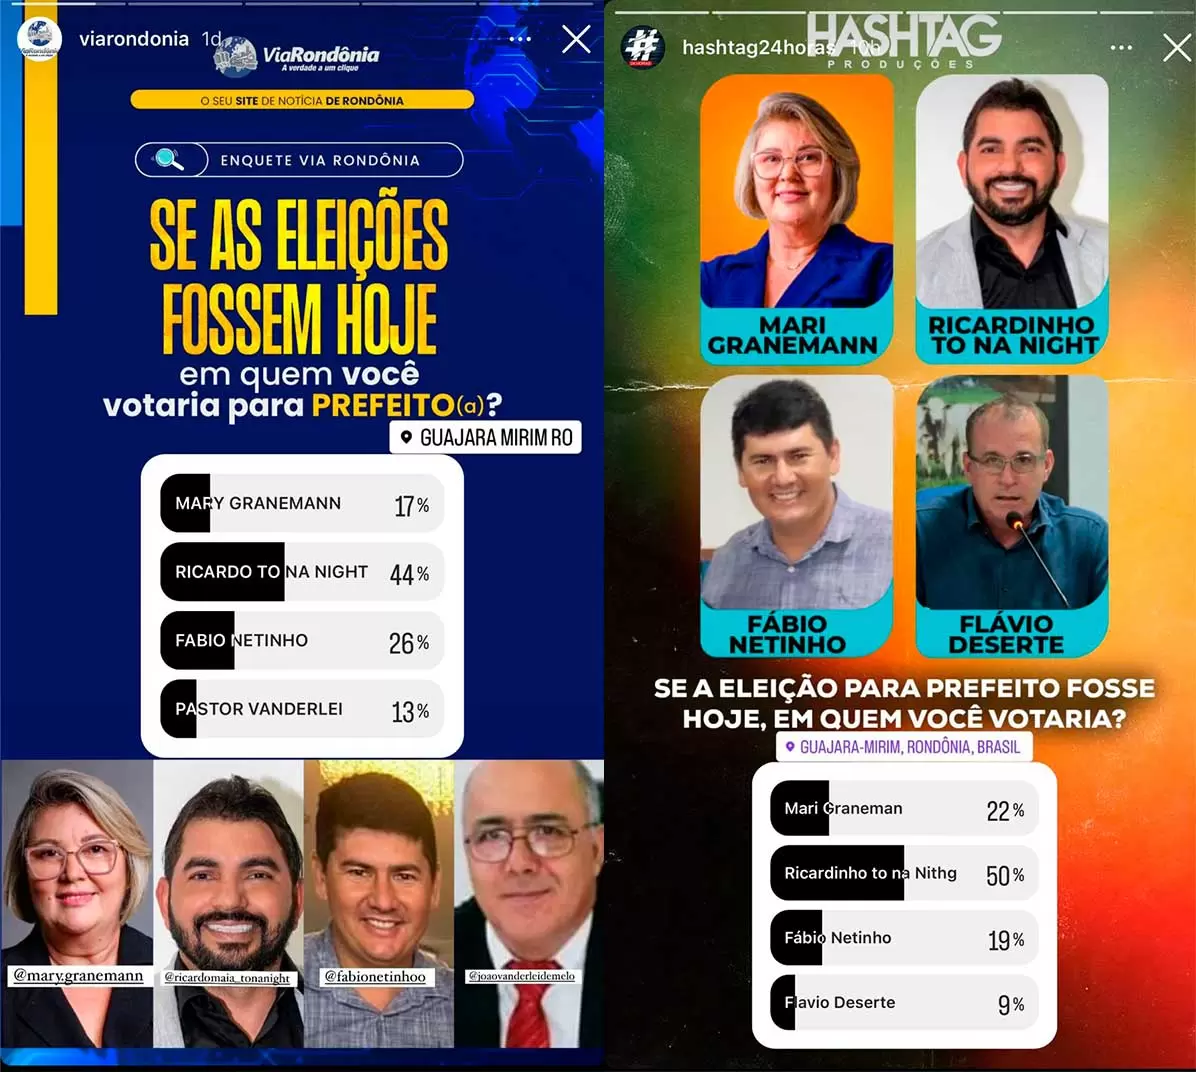 Vitória nas Pesquisas de Intenção de Votos: Agradecimento de Ricardo Maia